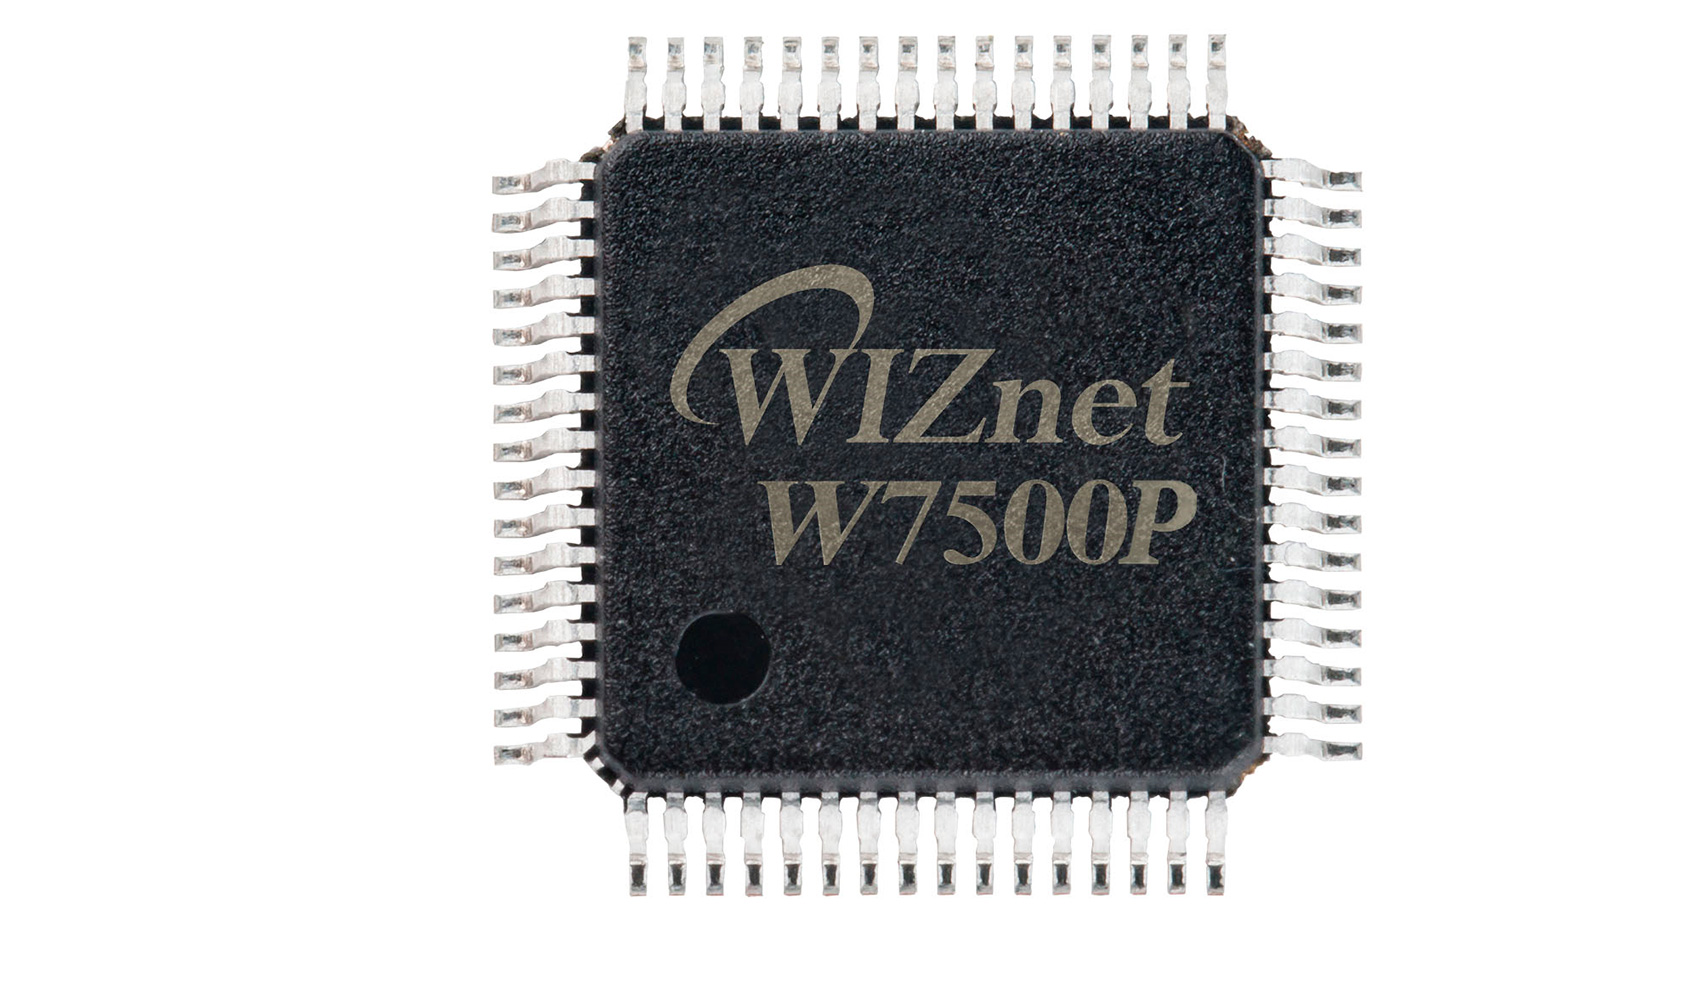 El nuevo procesador cuenta con el respaldo de la tarjeta WIZwiki-W7500P